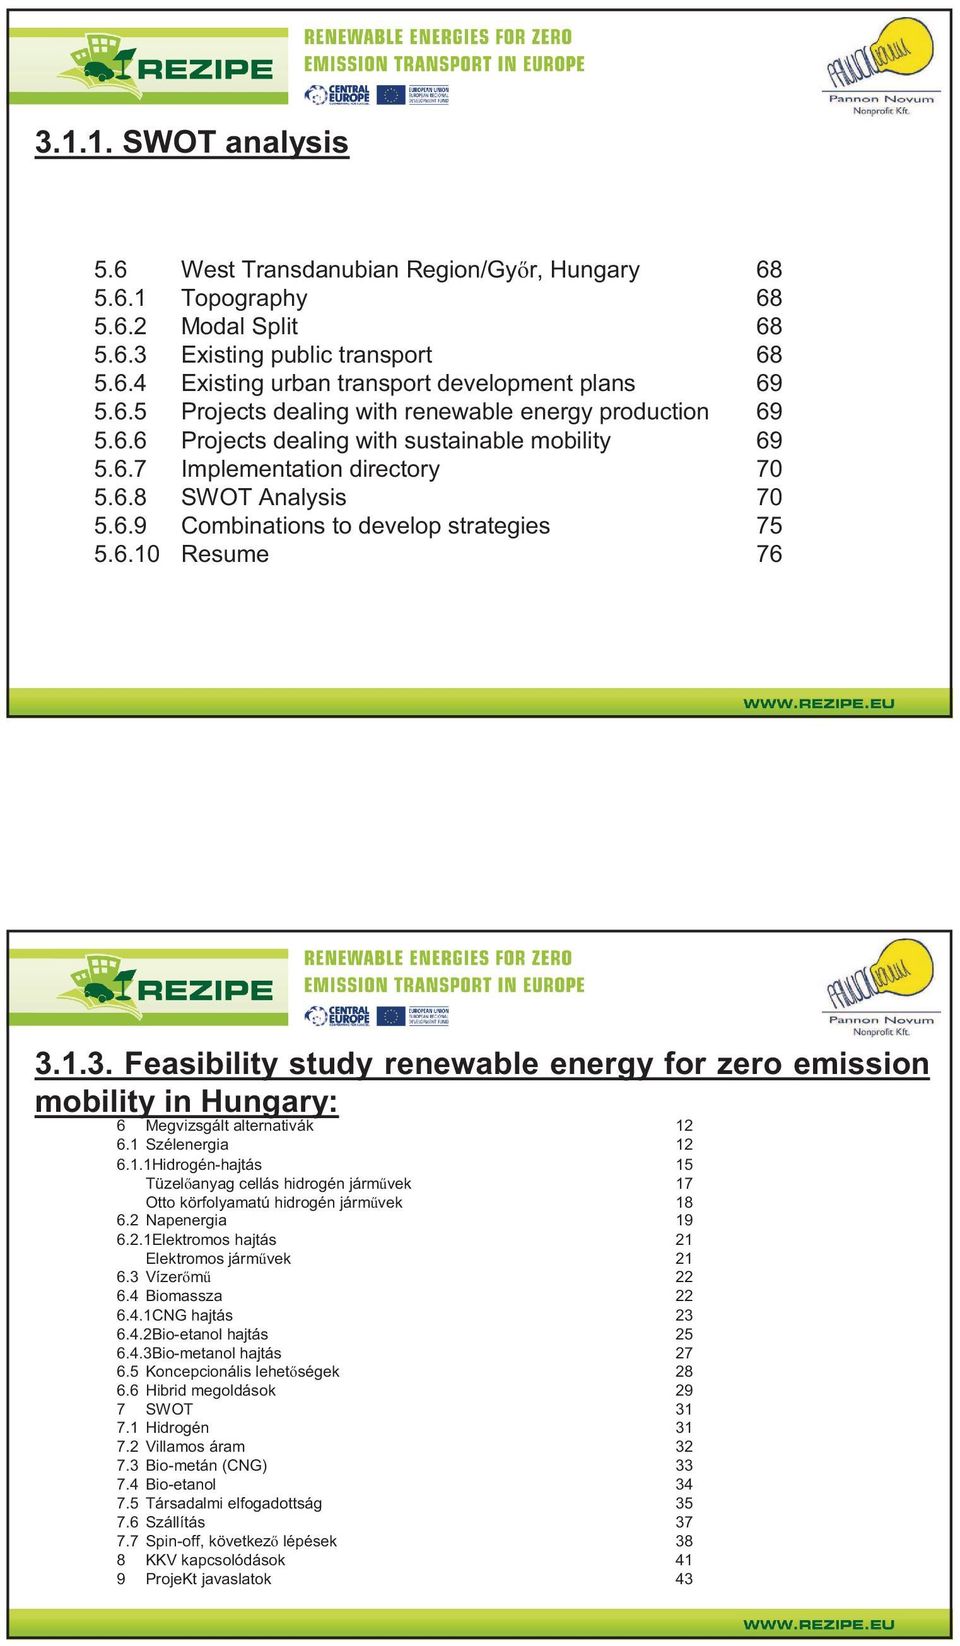 1.3. Feasibility study renewable energy for zero emission mobility in Hungary: 6 Megvizsgált alternativák 12 6.1 Szélenergia 12 6.1.1Hidrogén-hajtás 15 Tüzel anyag cellás hidrogén járm vek 17 Otto körfolyamatú hidrogén járm vek 18 6.